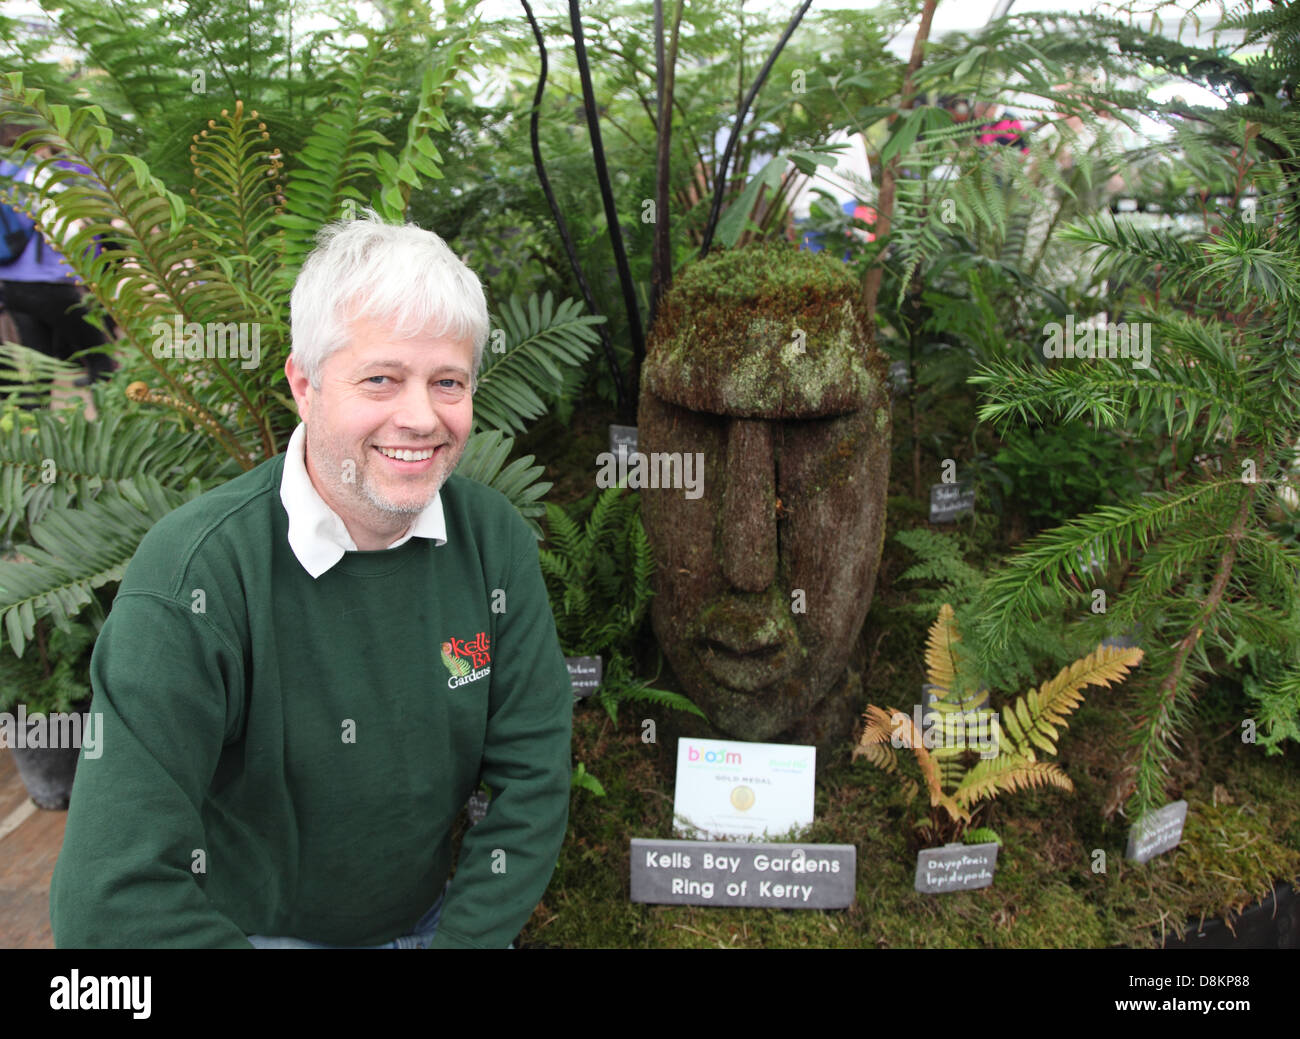 Billy Alexander avec sa médaille d'or gagner Kells Bay Gardens affichage à bloom in the Park 2013, Dublin, Irlande Banque D'Images